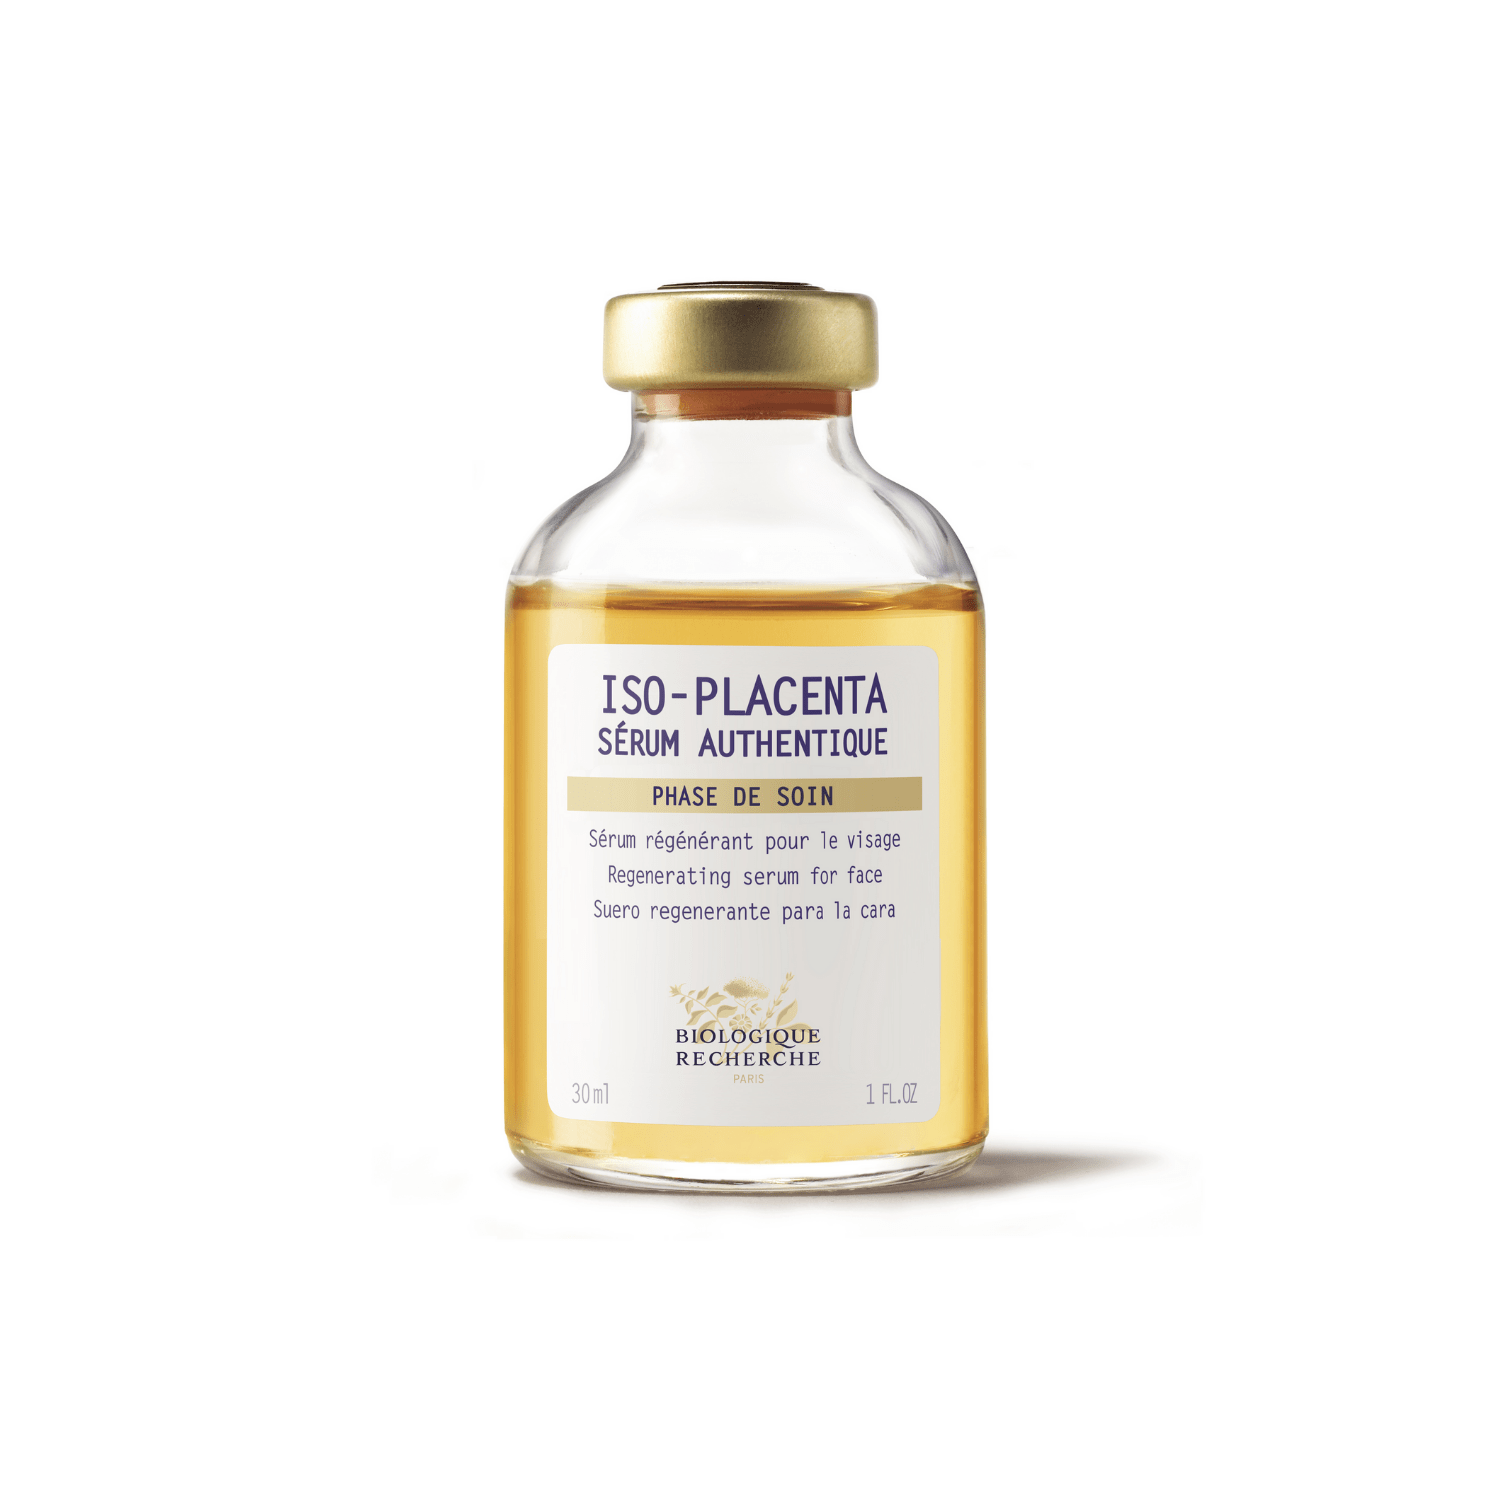 Placenta serum